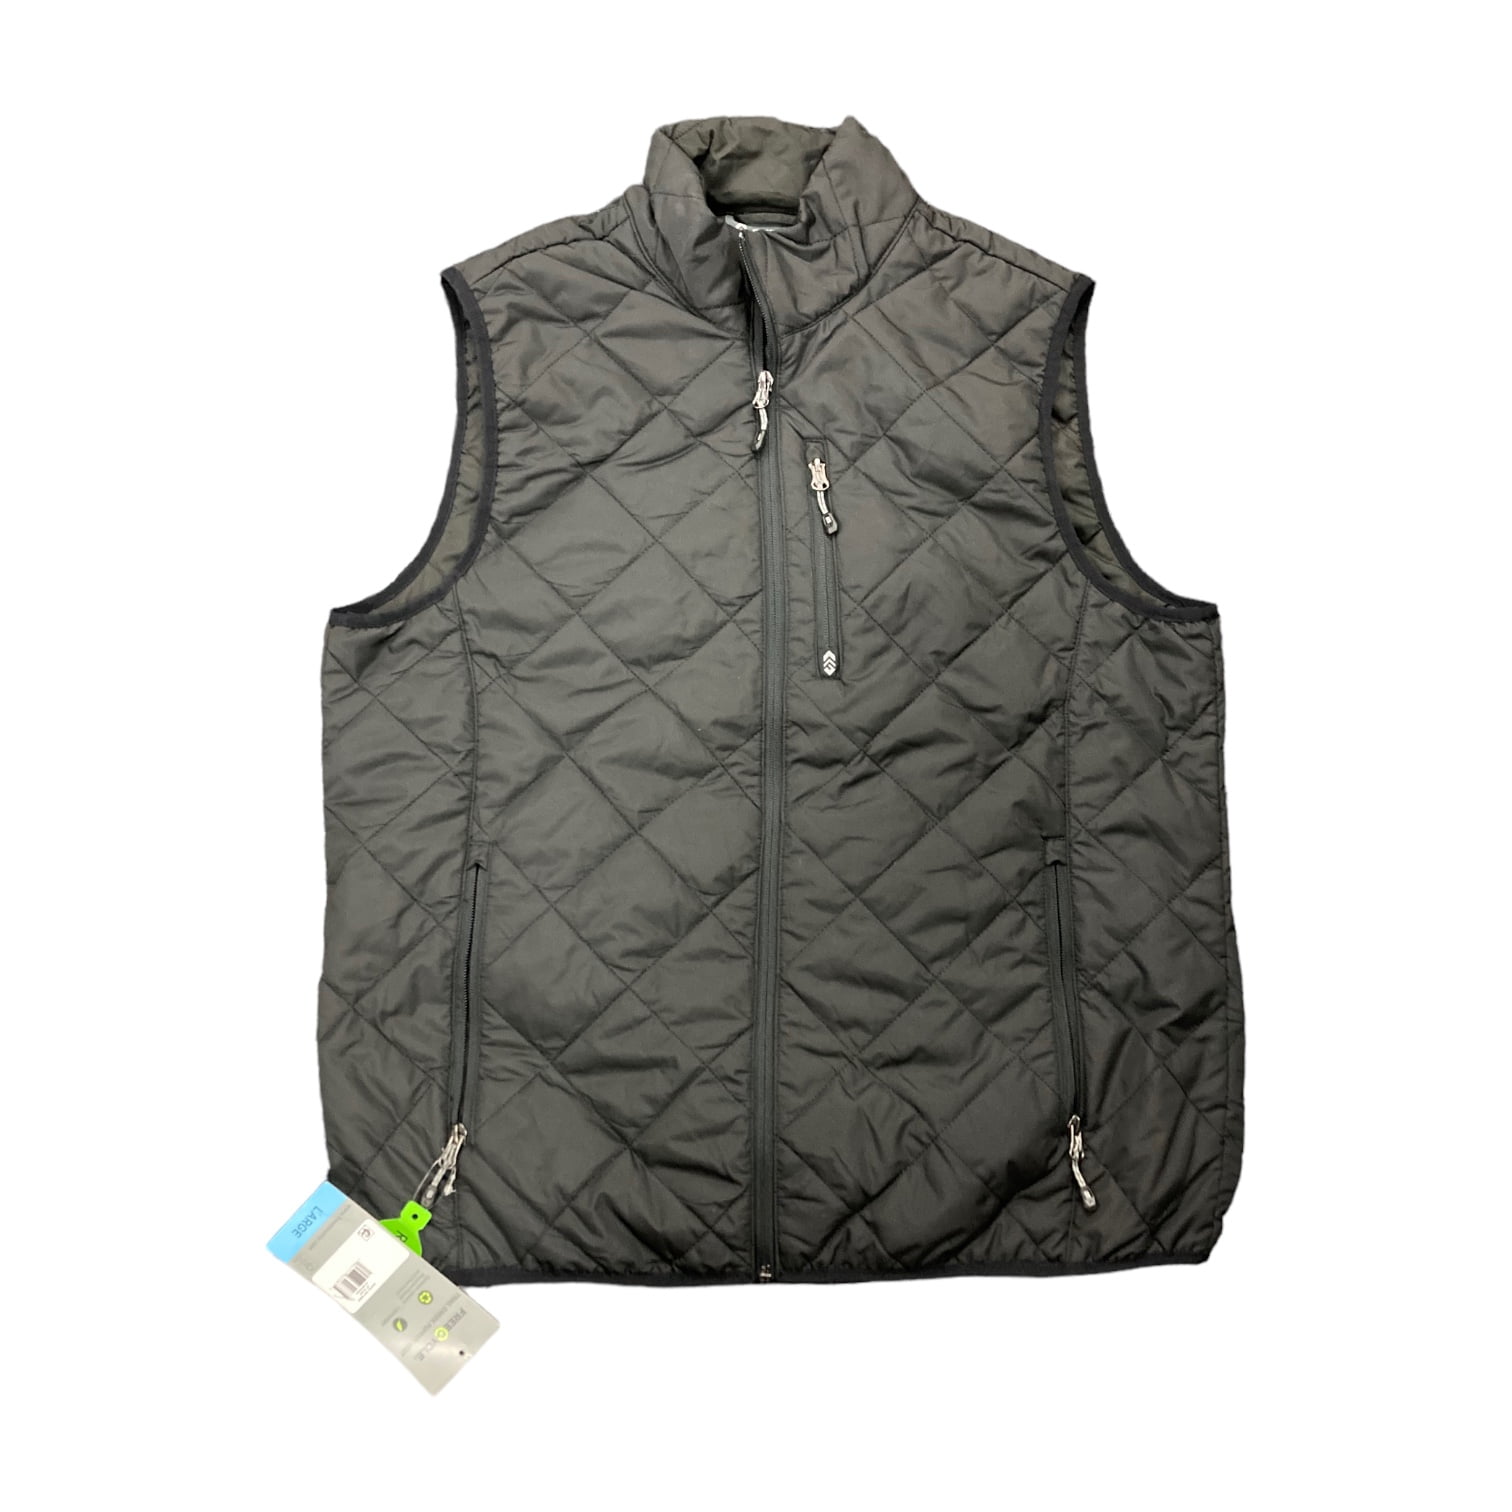 Pure Cotton Plain Slim N Lift Mens Vest, Black at Rs 130/piece in